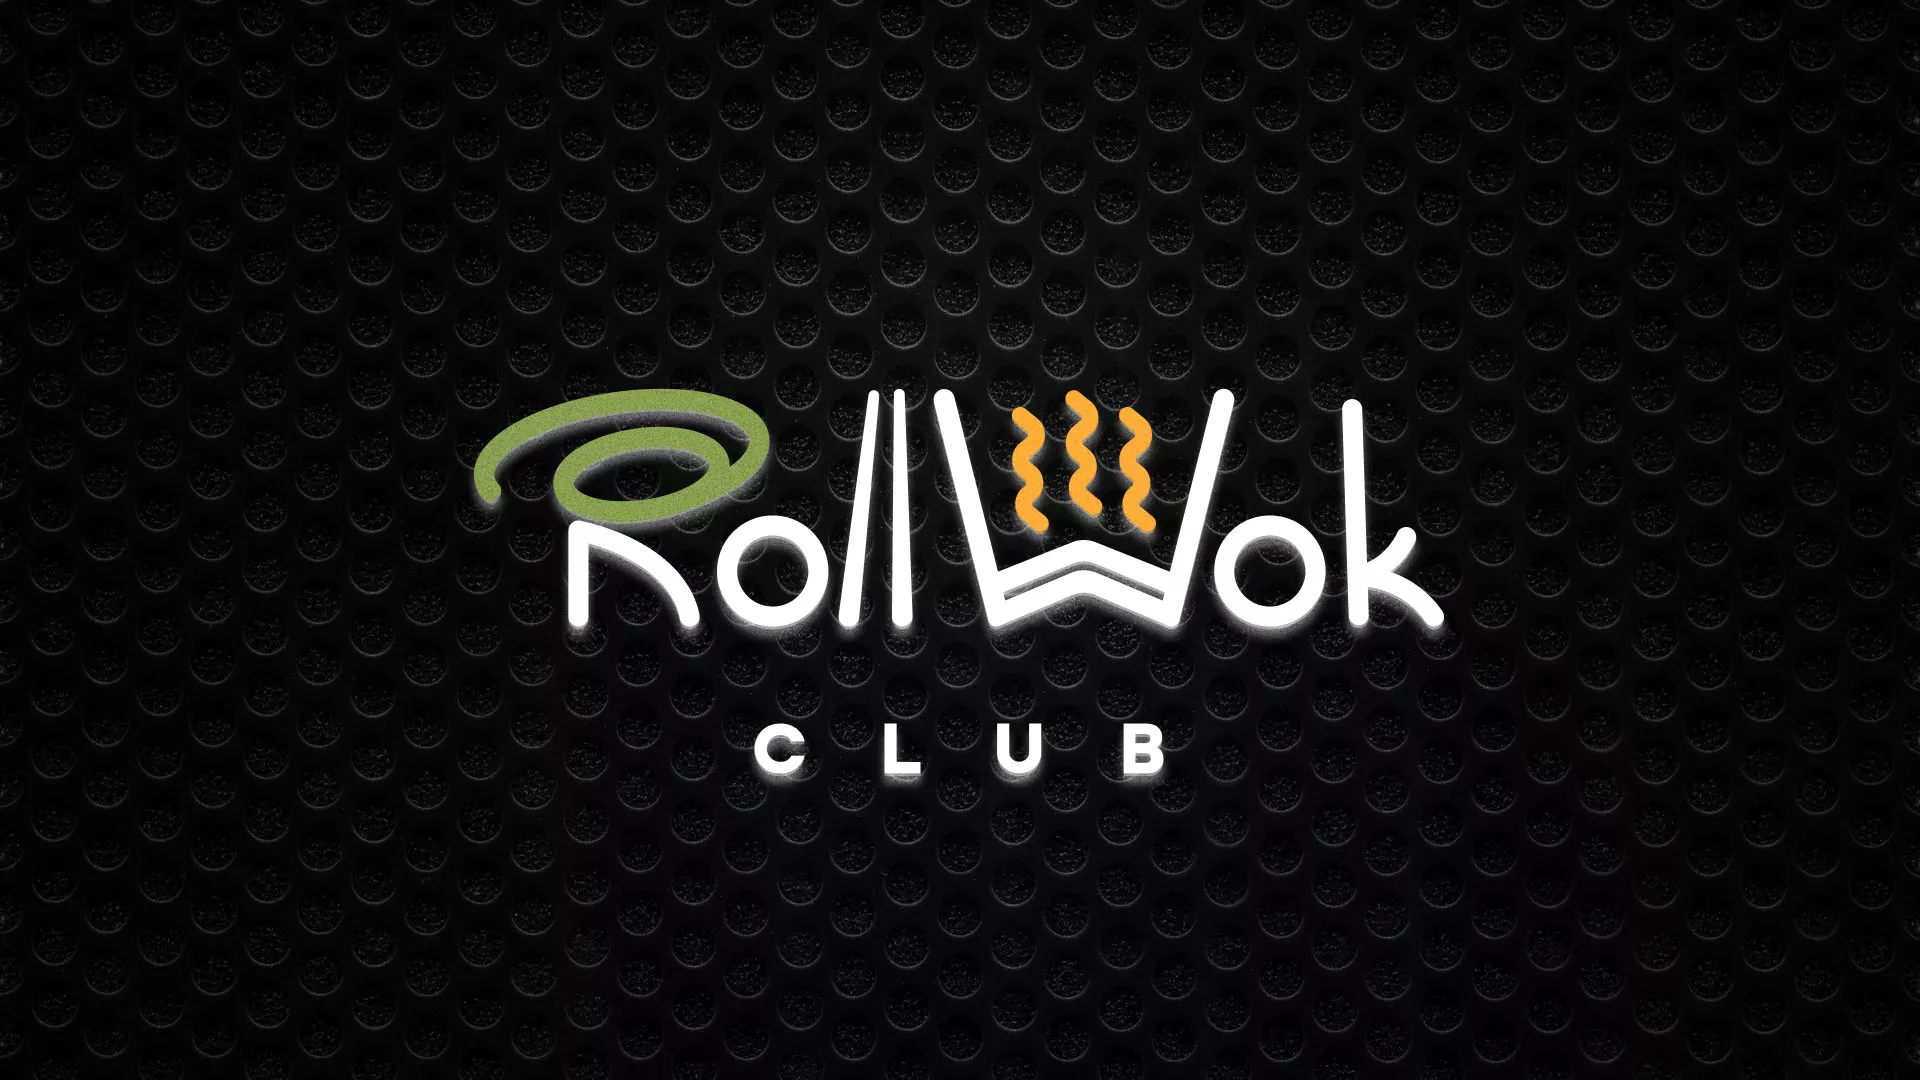 Брендирование торговых точек суши-бара «Roll Wok Club» в Балаково